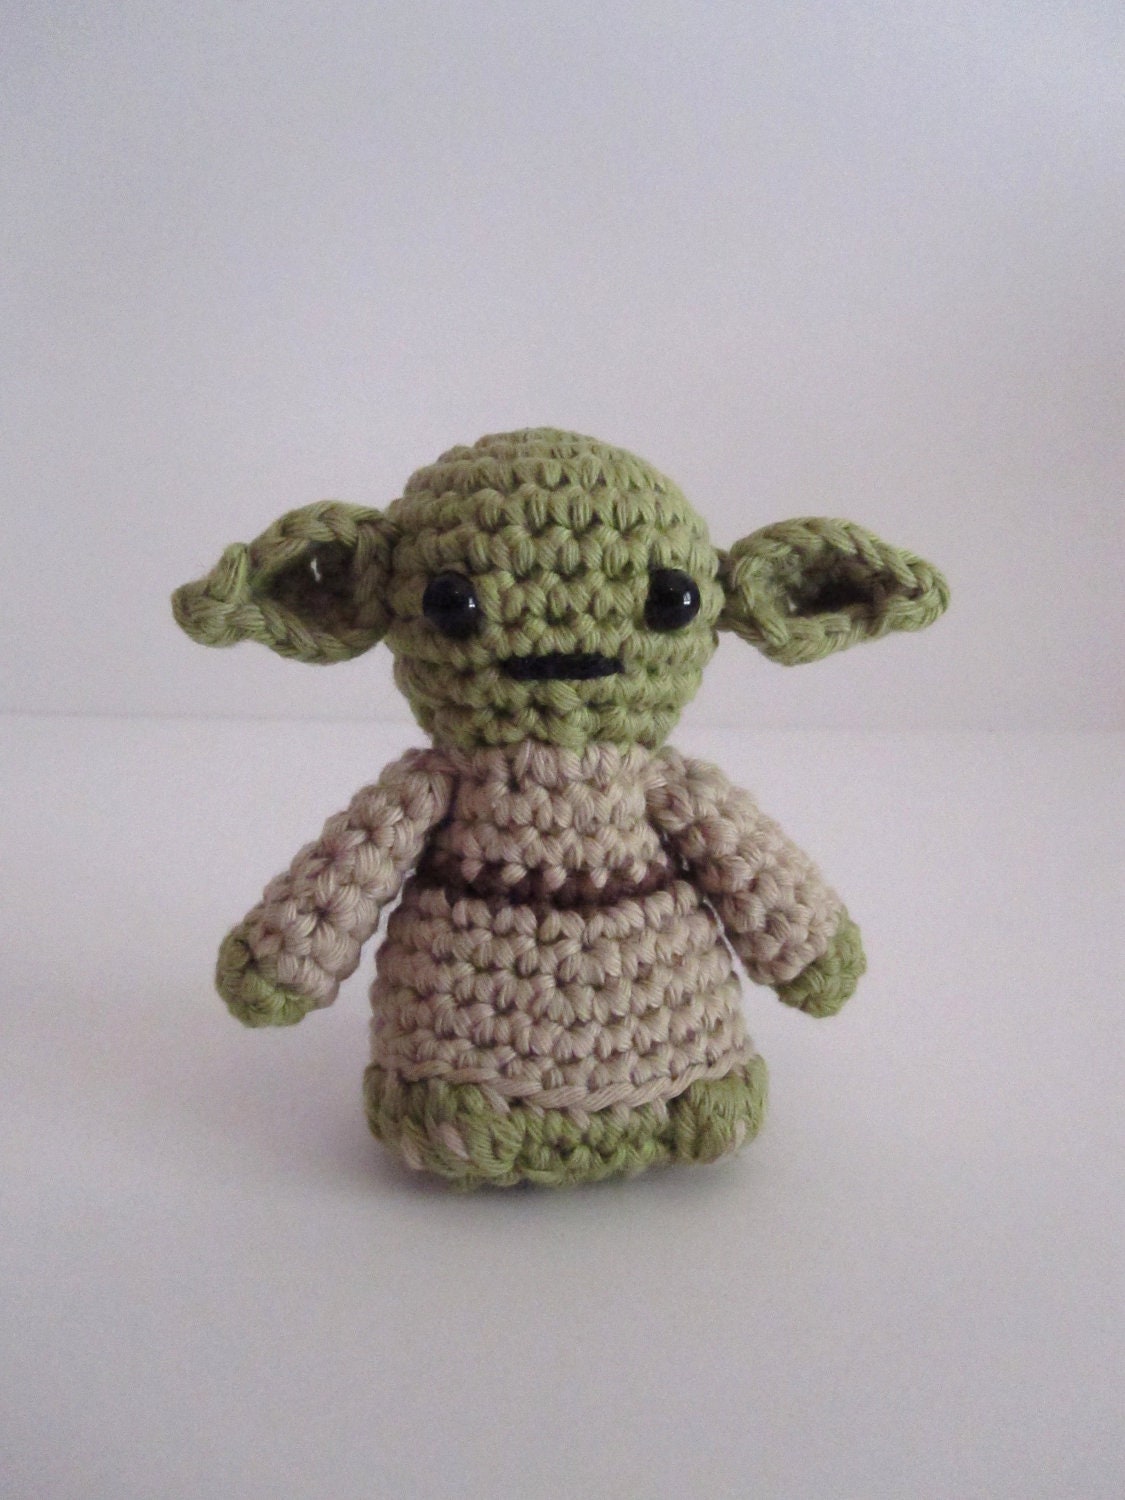 Yoda inspired amigurumi - HimawariLand